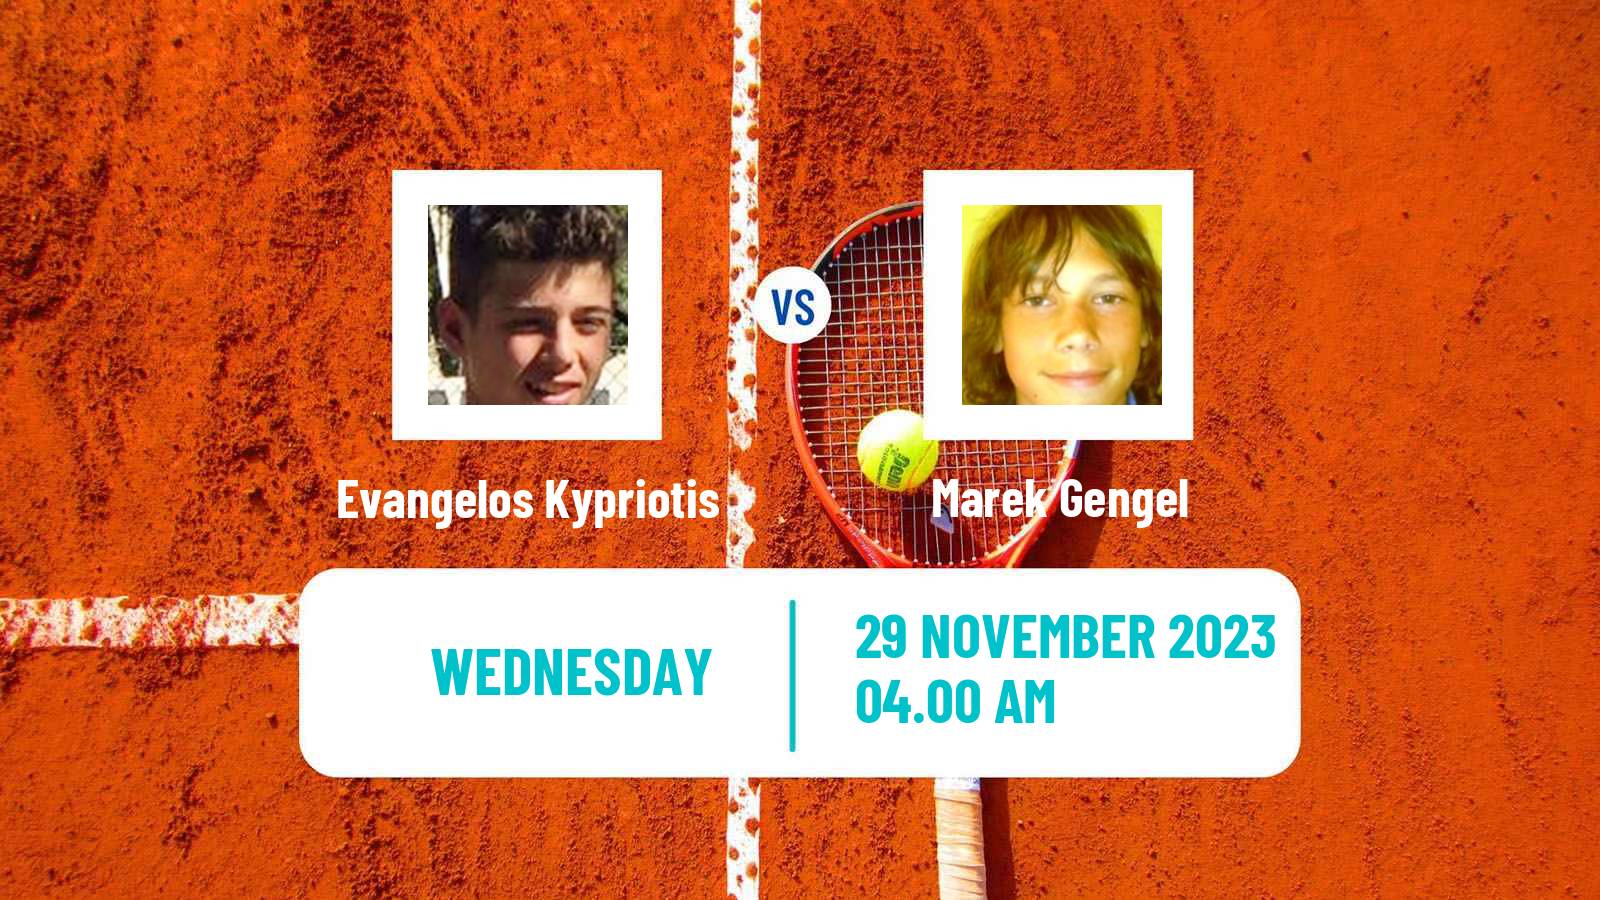 Tennis ITF M25 Heraklion 3 Men Evangelos Kypriotis - Marek Gengel